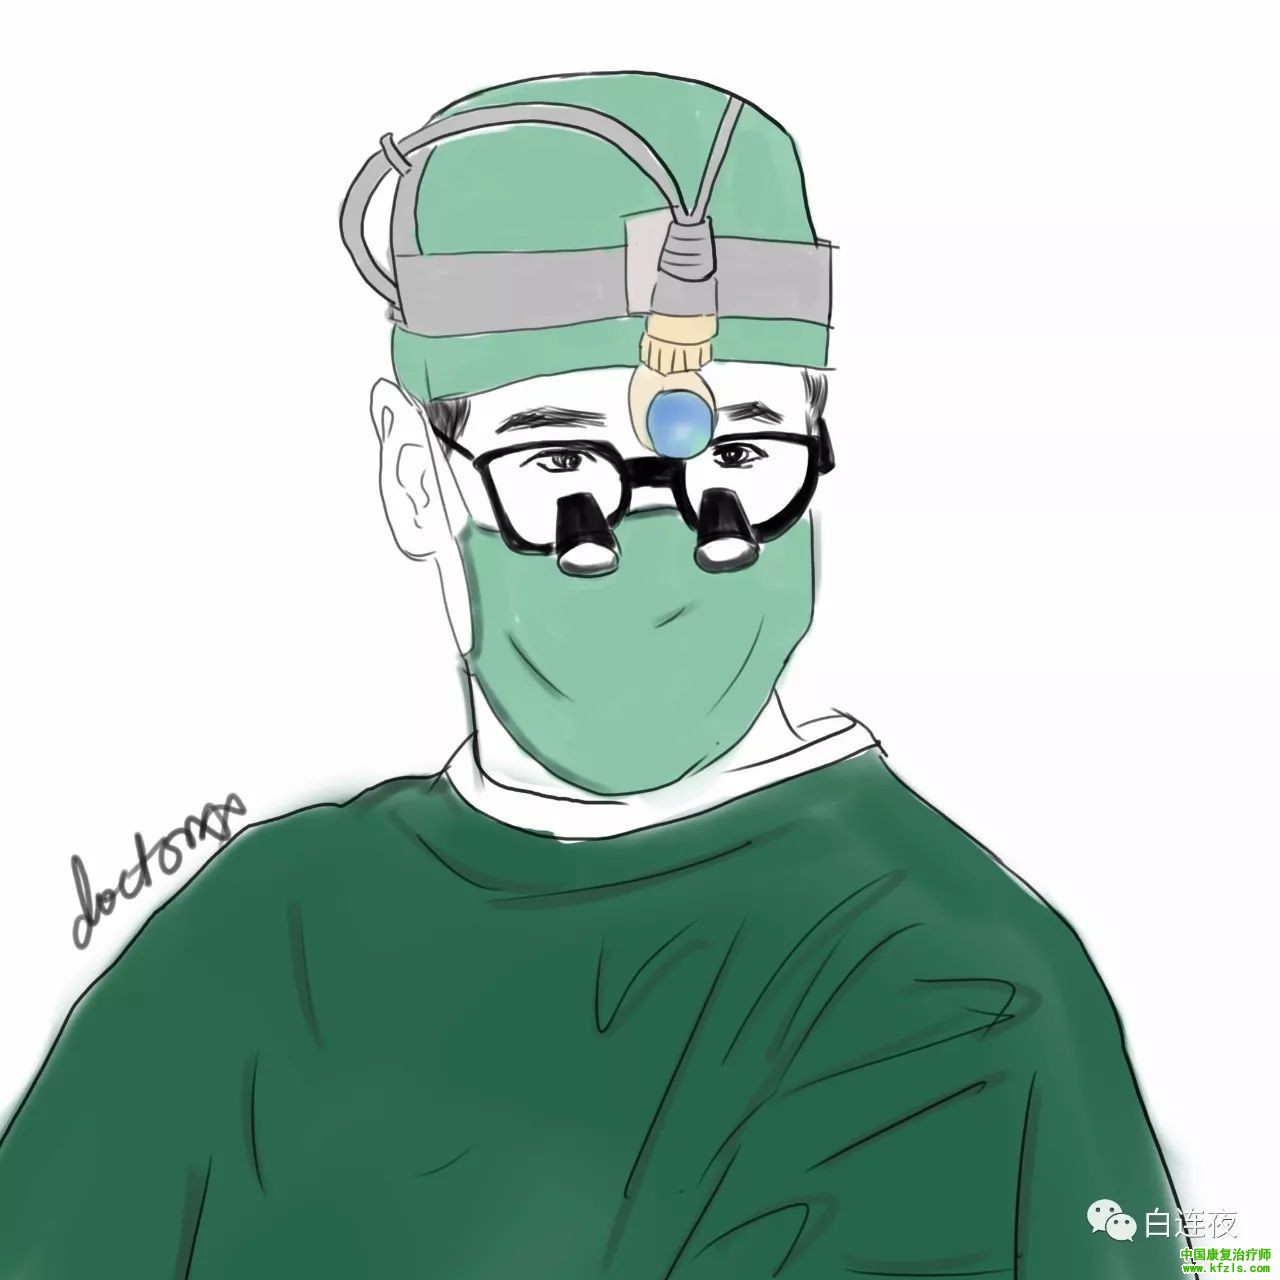 为什么手术服是绿色的？